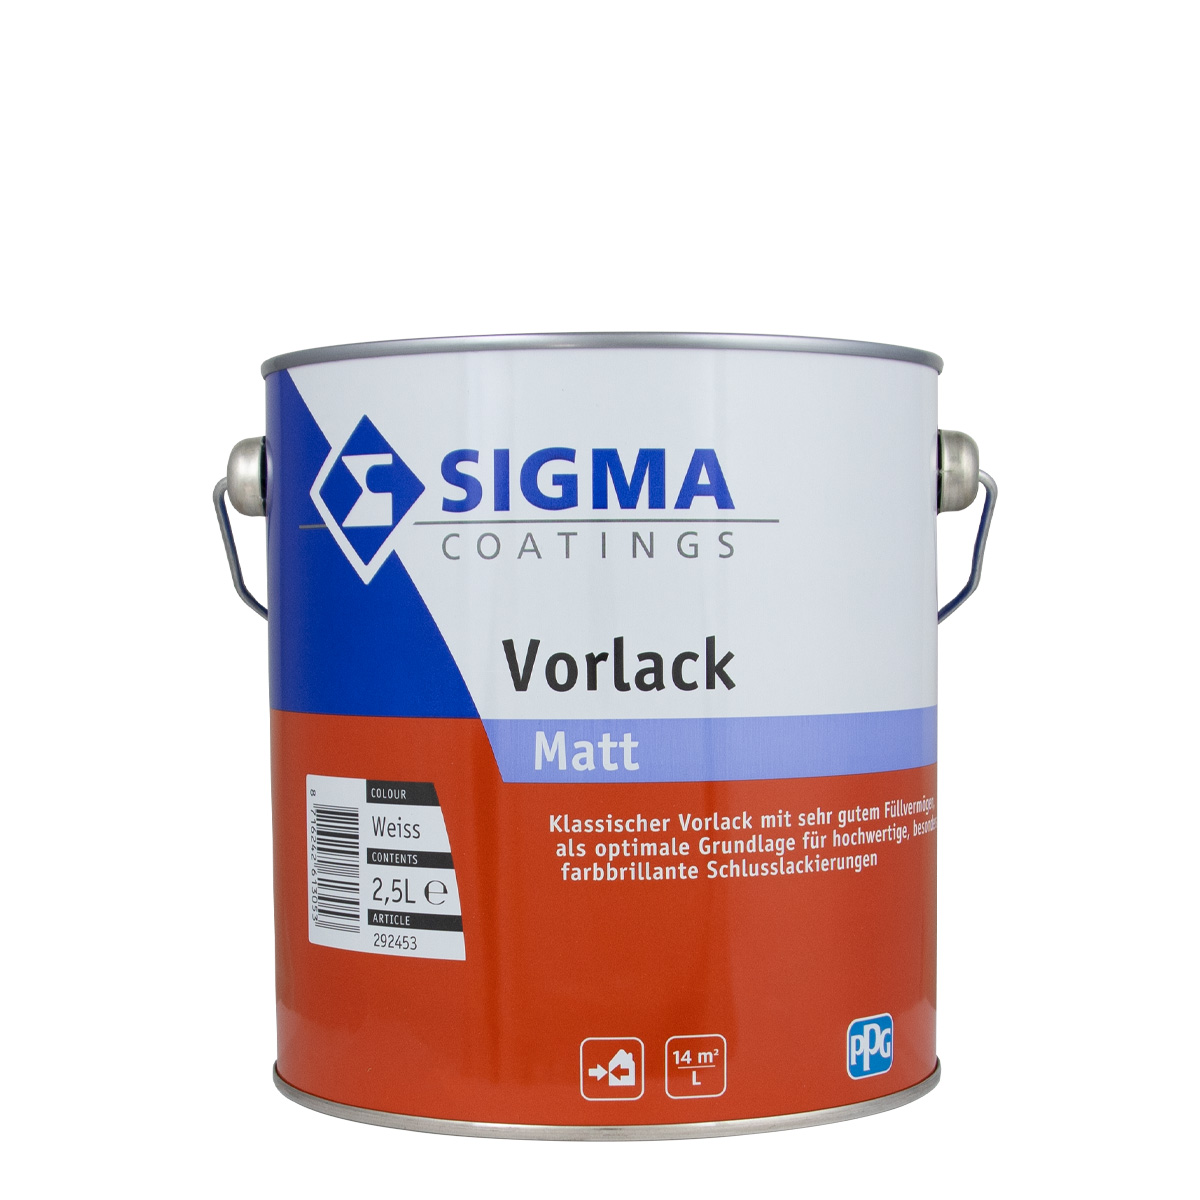 Sigma Vorlack Matt weiss 2,5L